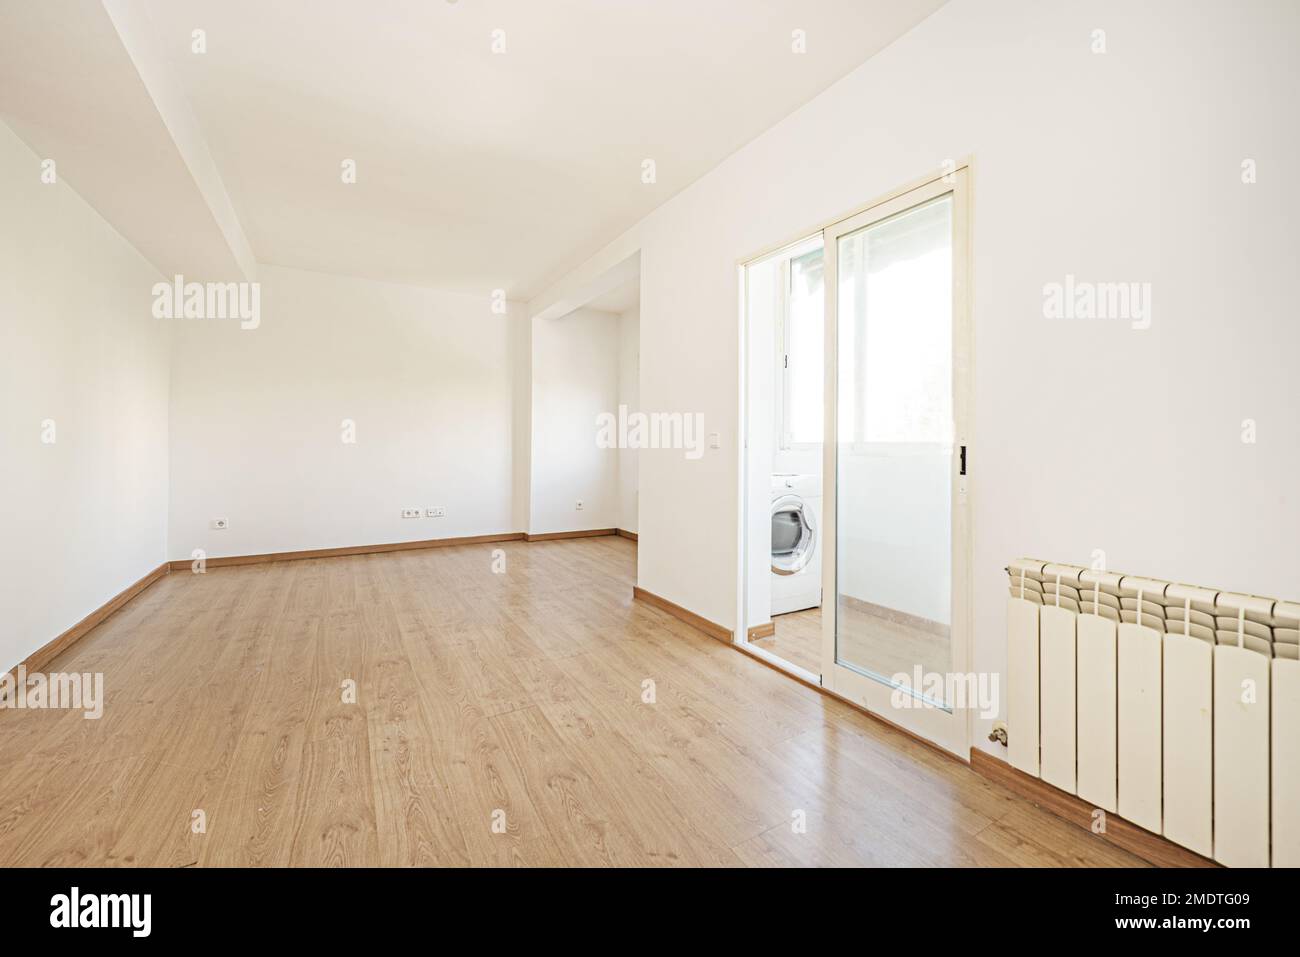 Leeres Wohnzimmer eines Hauses mit Eichenlaminatboden mit passenden Sockelleisten und Türen, geschlossene Terrasse mit doppelverglaster Aluminiumtür mit einem Stockfoto